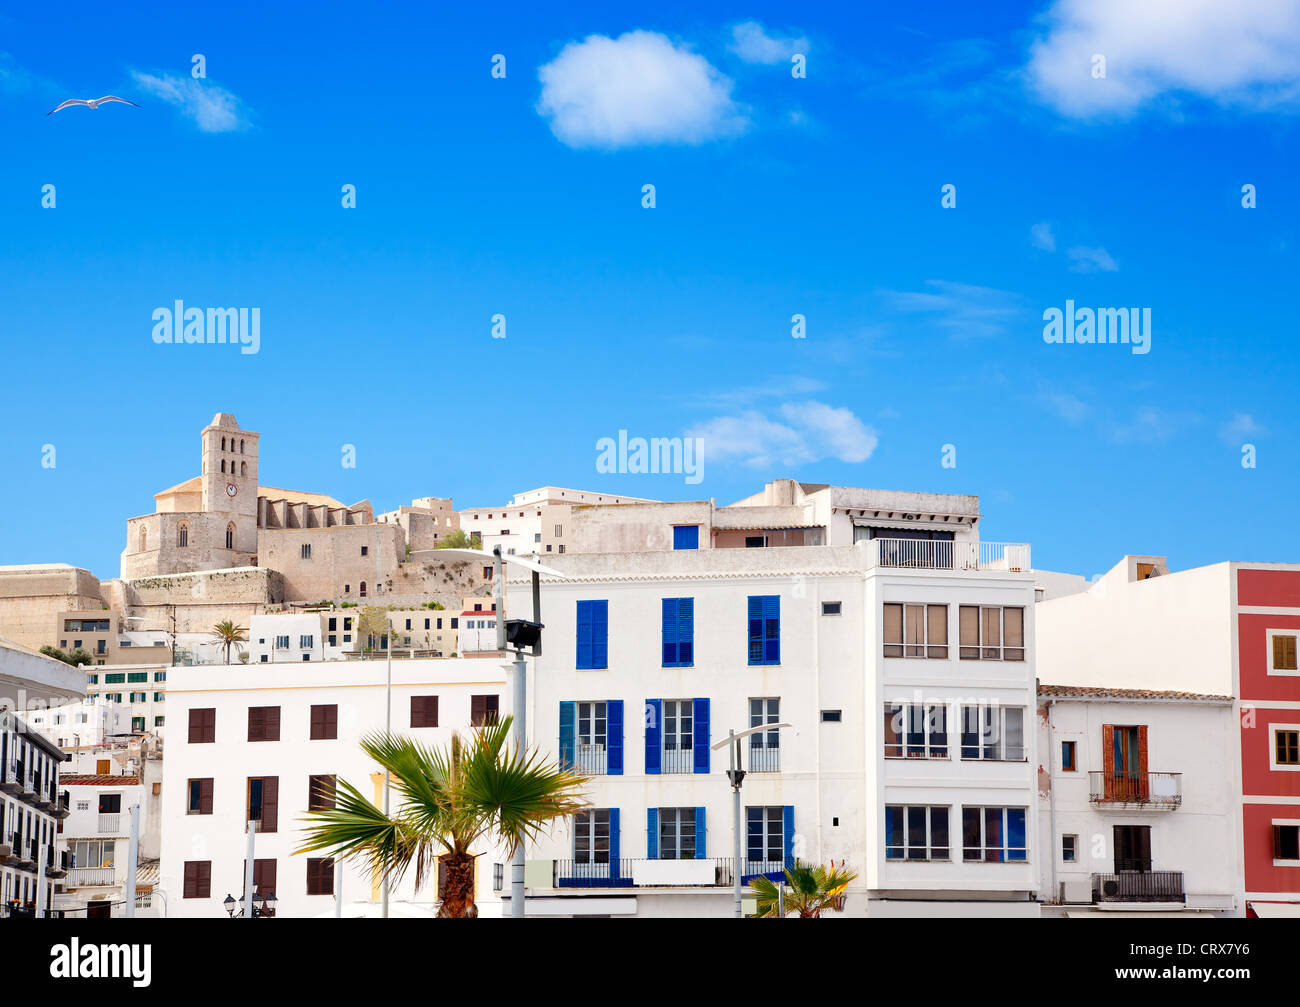 Eivissa, Ibiza town avec église, sous le ciel bleu d'été Banque D'Images